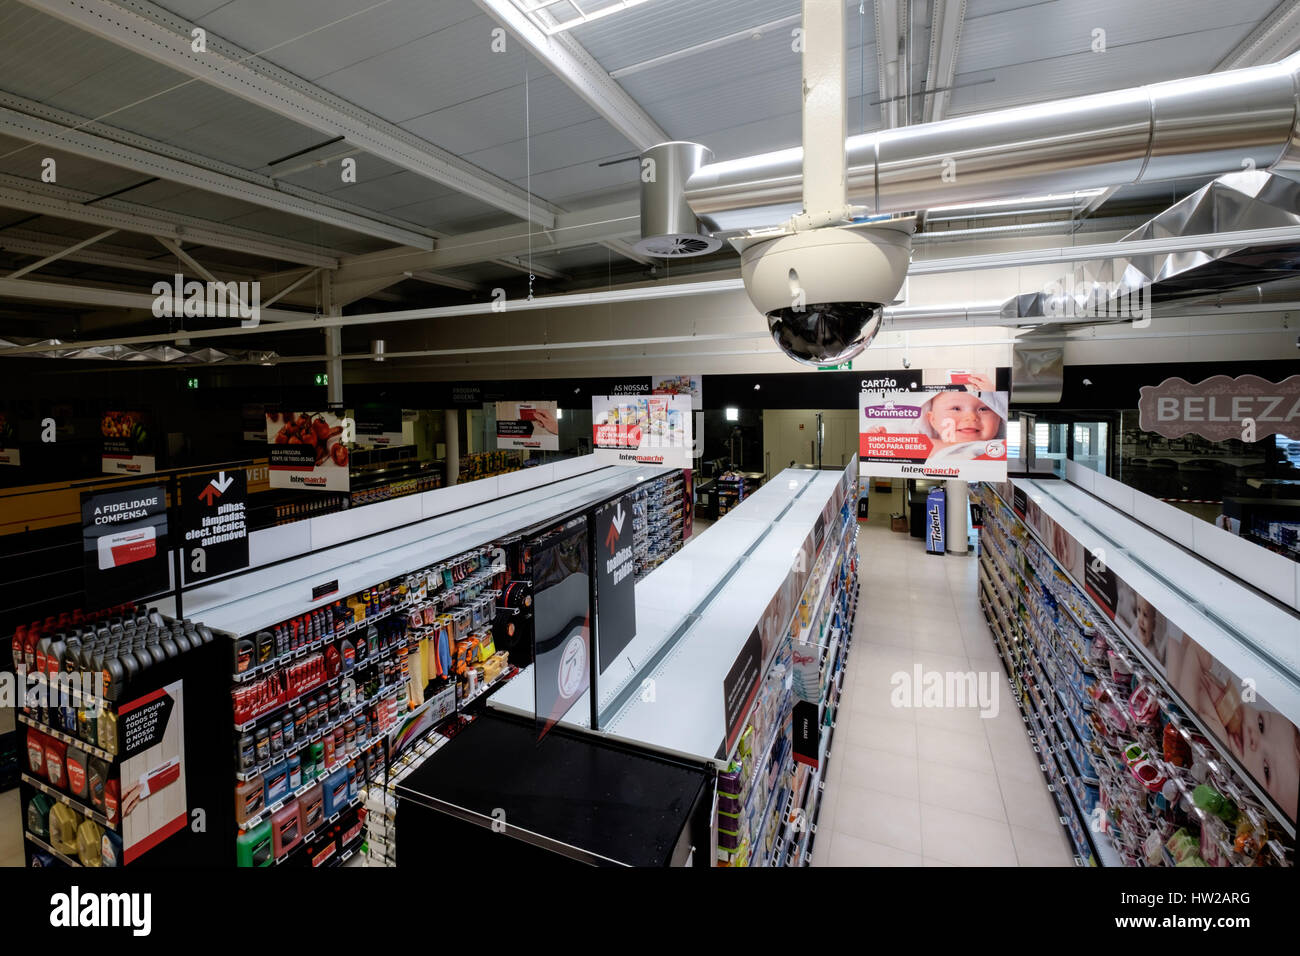 Videocamera di sicurezza sopra supermercato navate Foto Stock